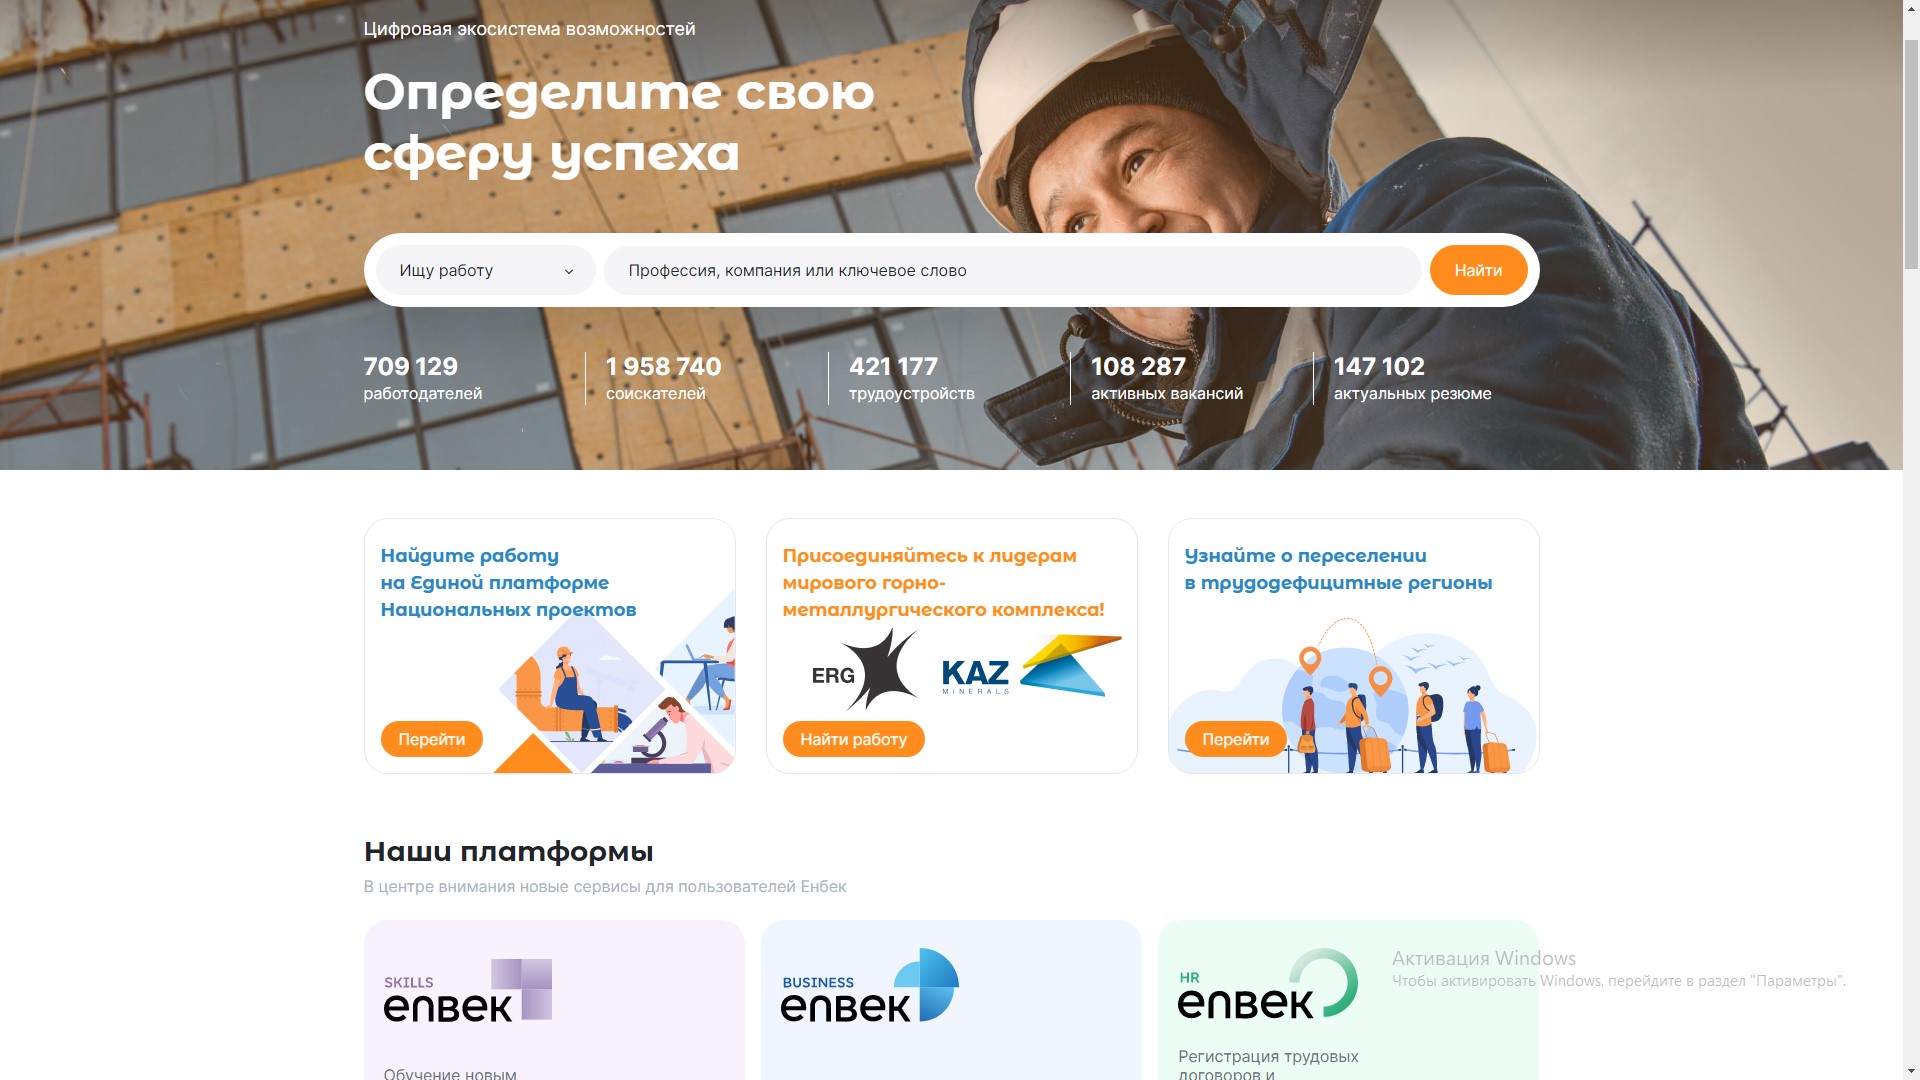 На Еnbek.kz до 1 декабря открыт прием заявок от работодателей на организацию субсидируемых рабочих мест